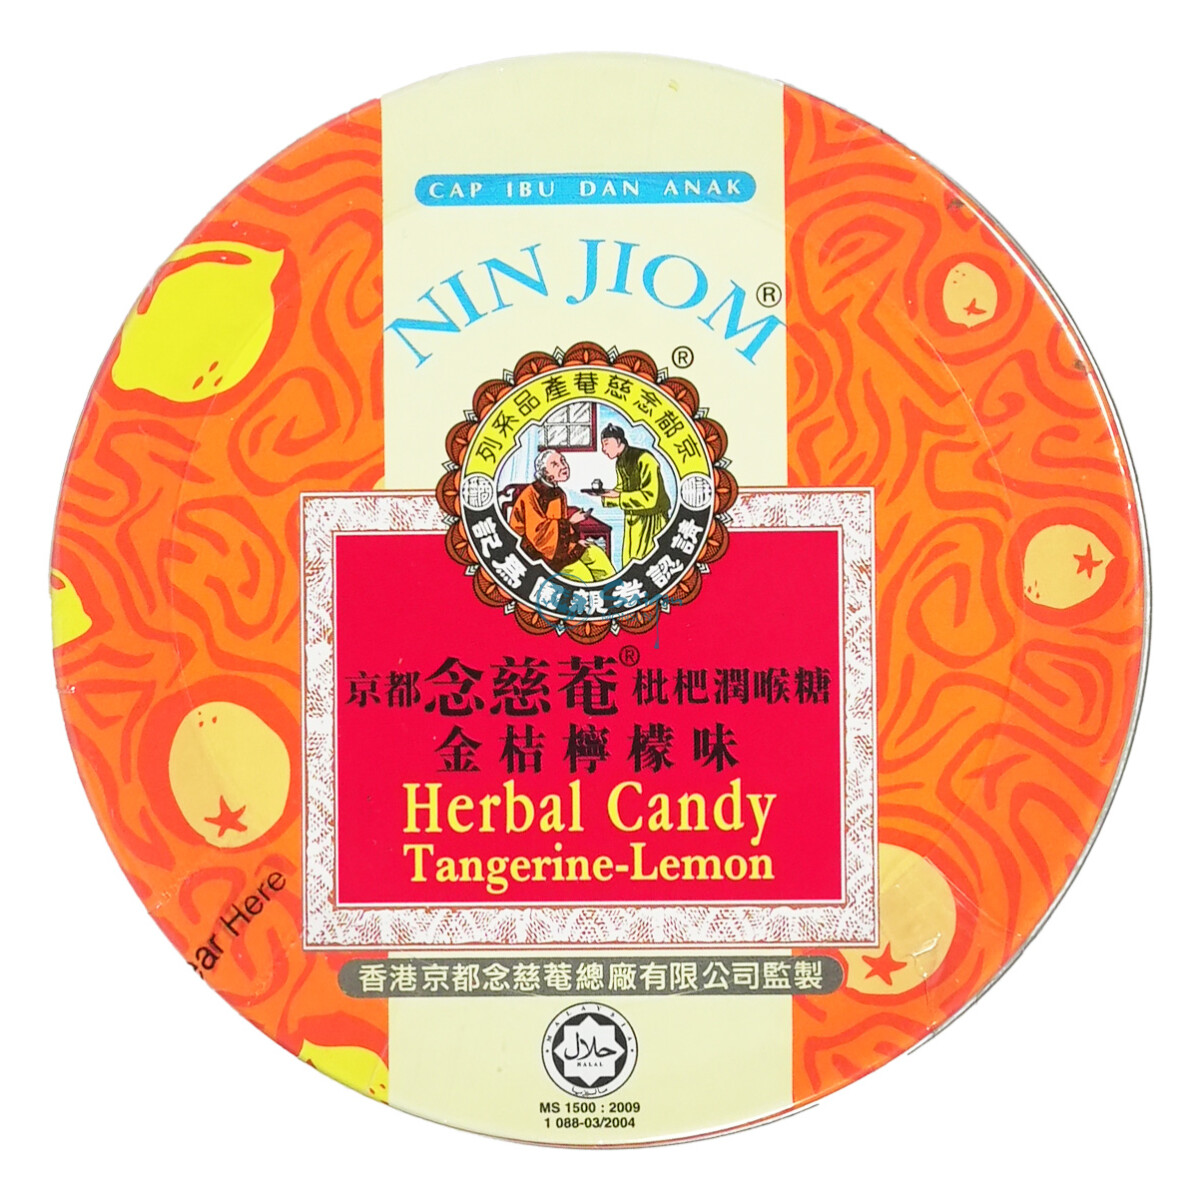 Nin Jiom Herbal Candy Tangerine Lemon 60g